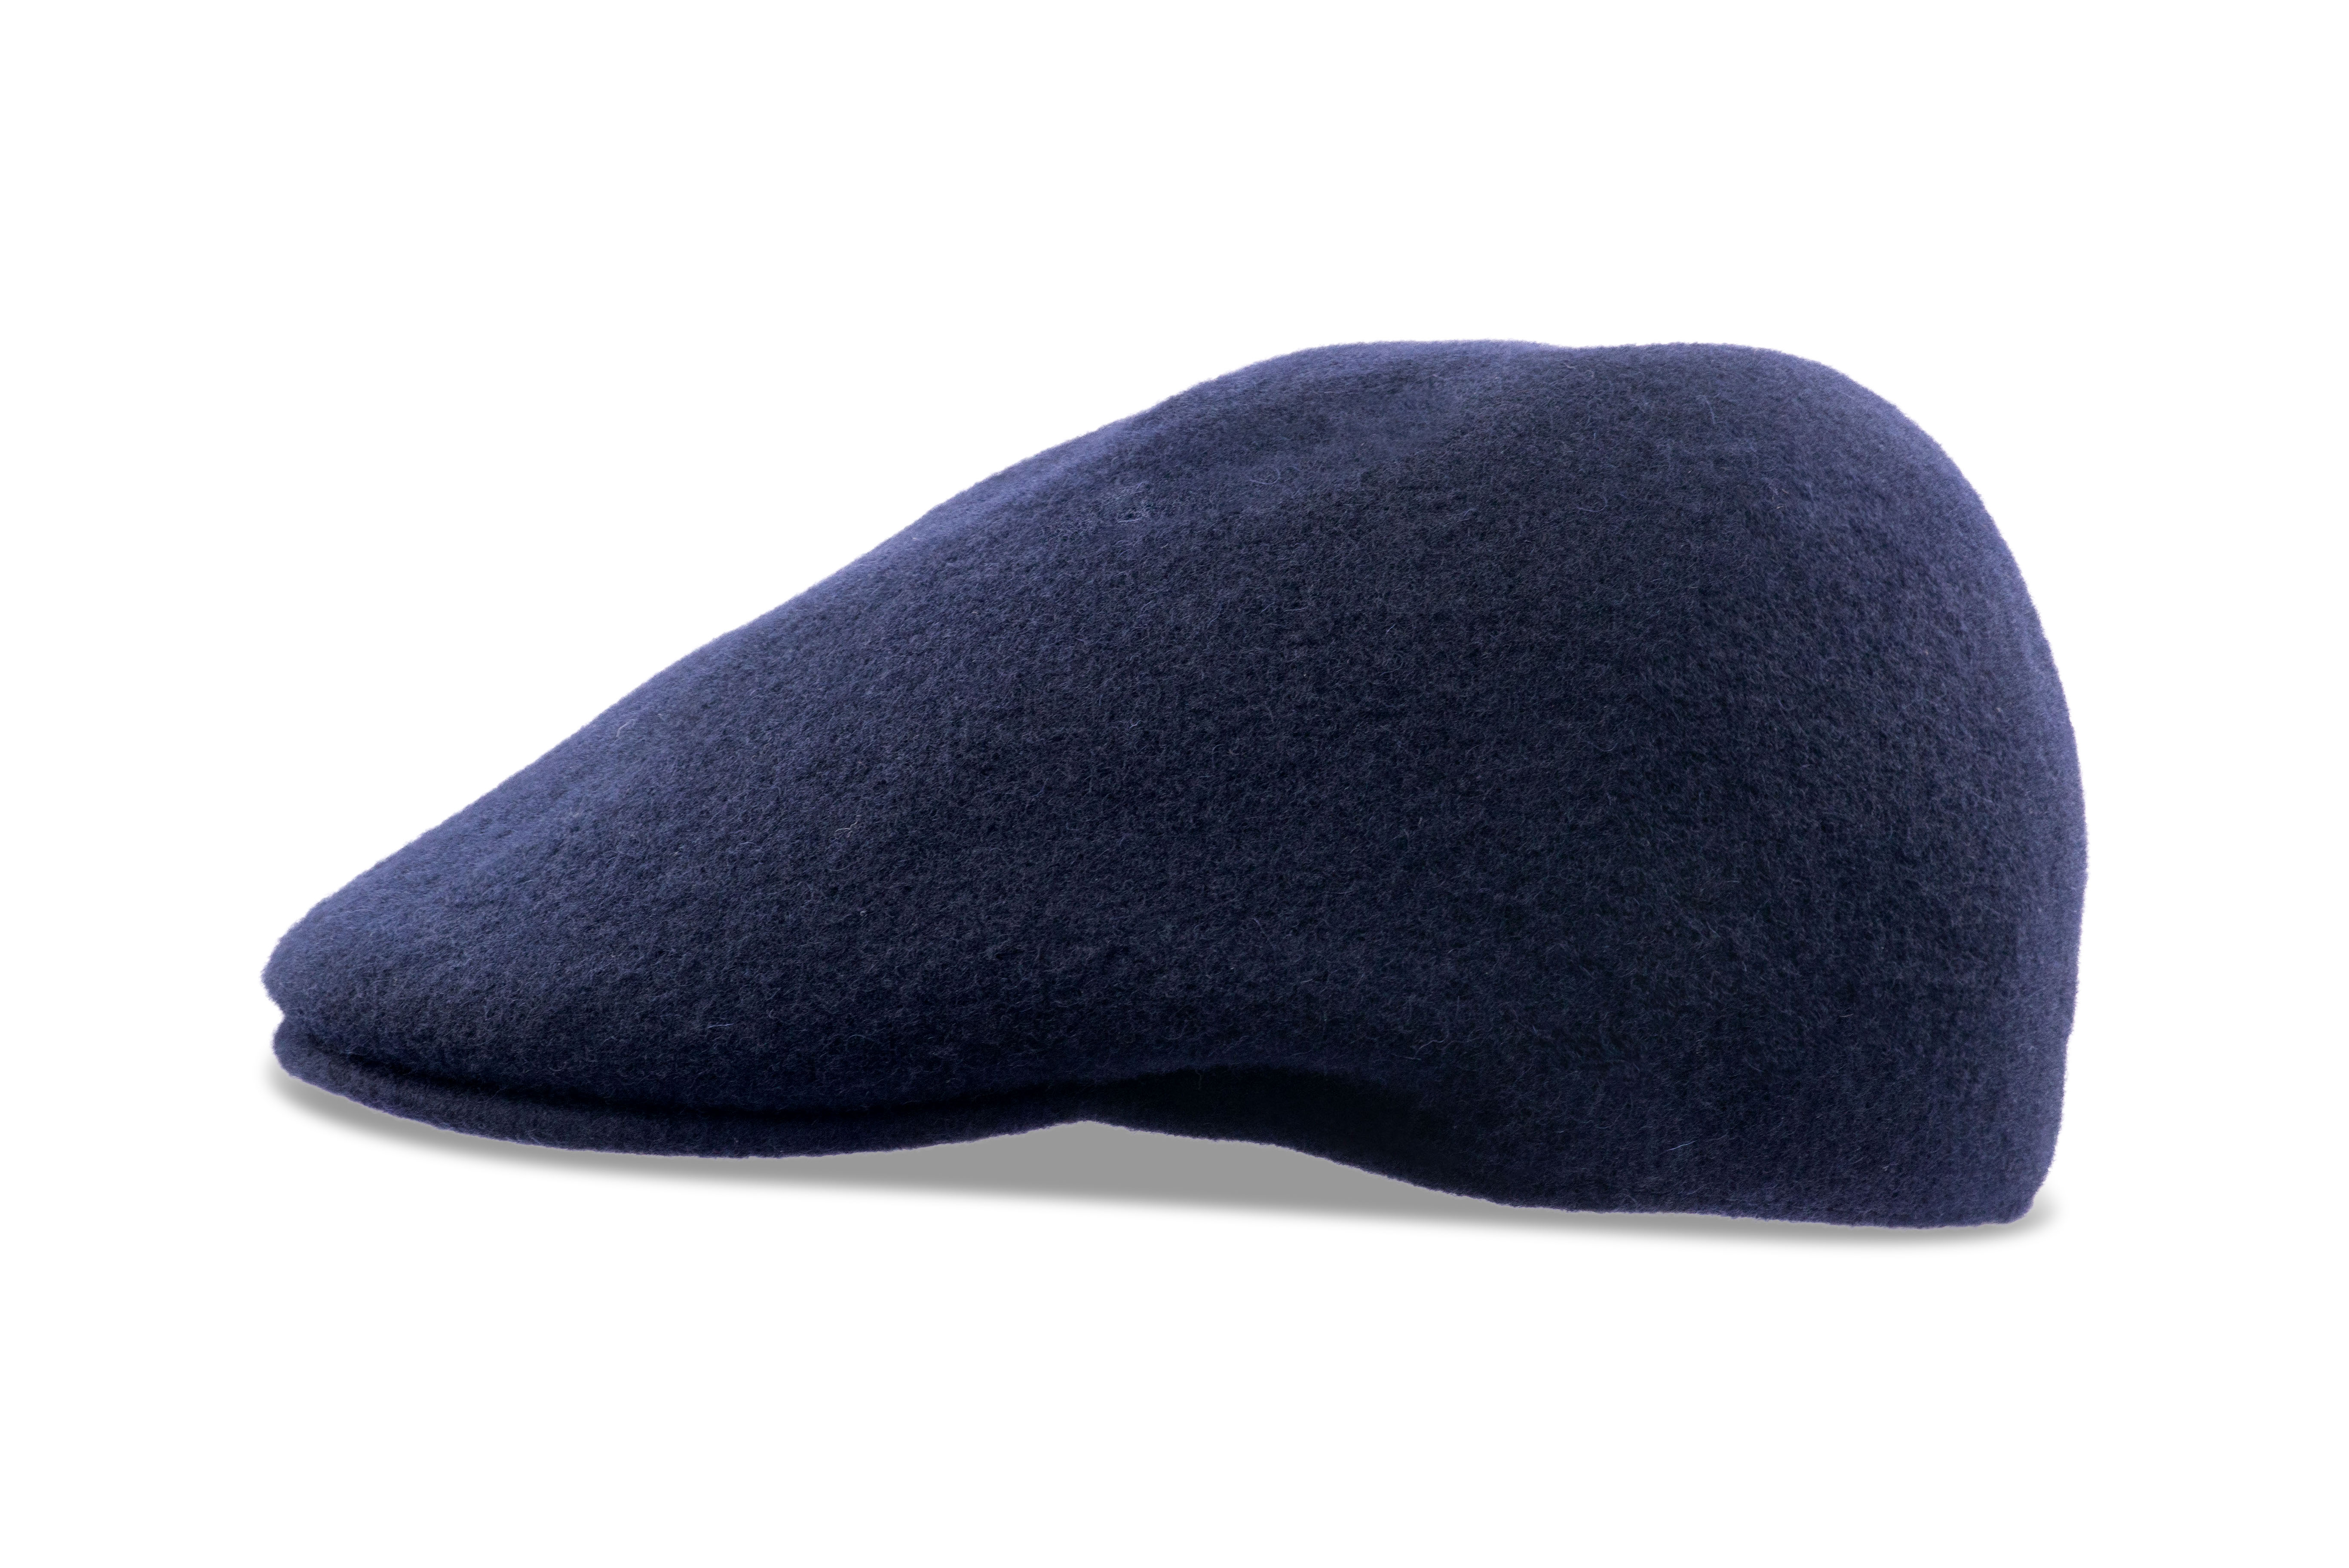 Kangol Seamless Wool 507 Felt Hat for Men and Women - Dark Blue - M